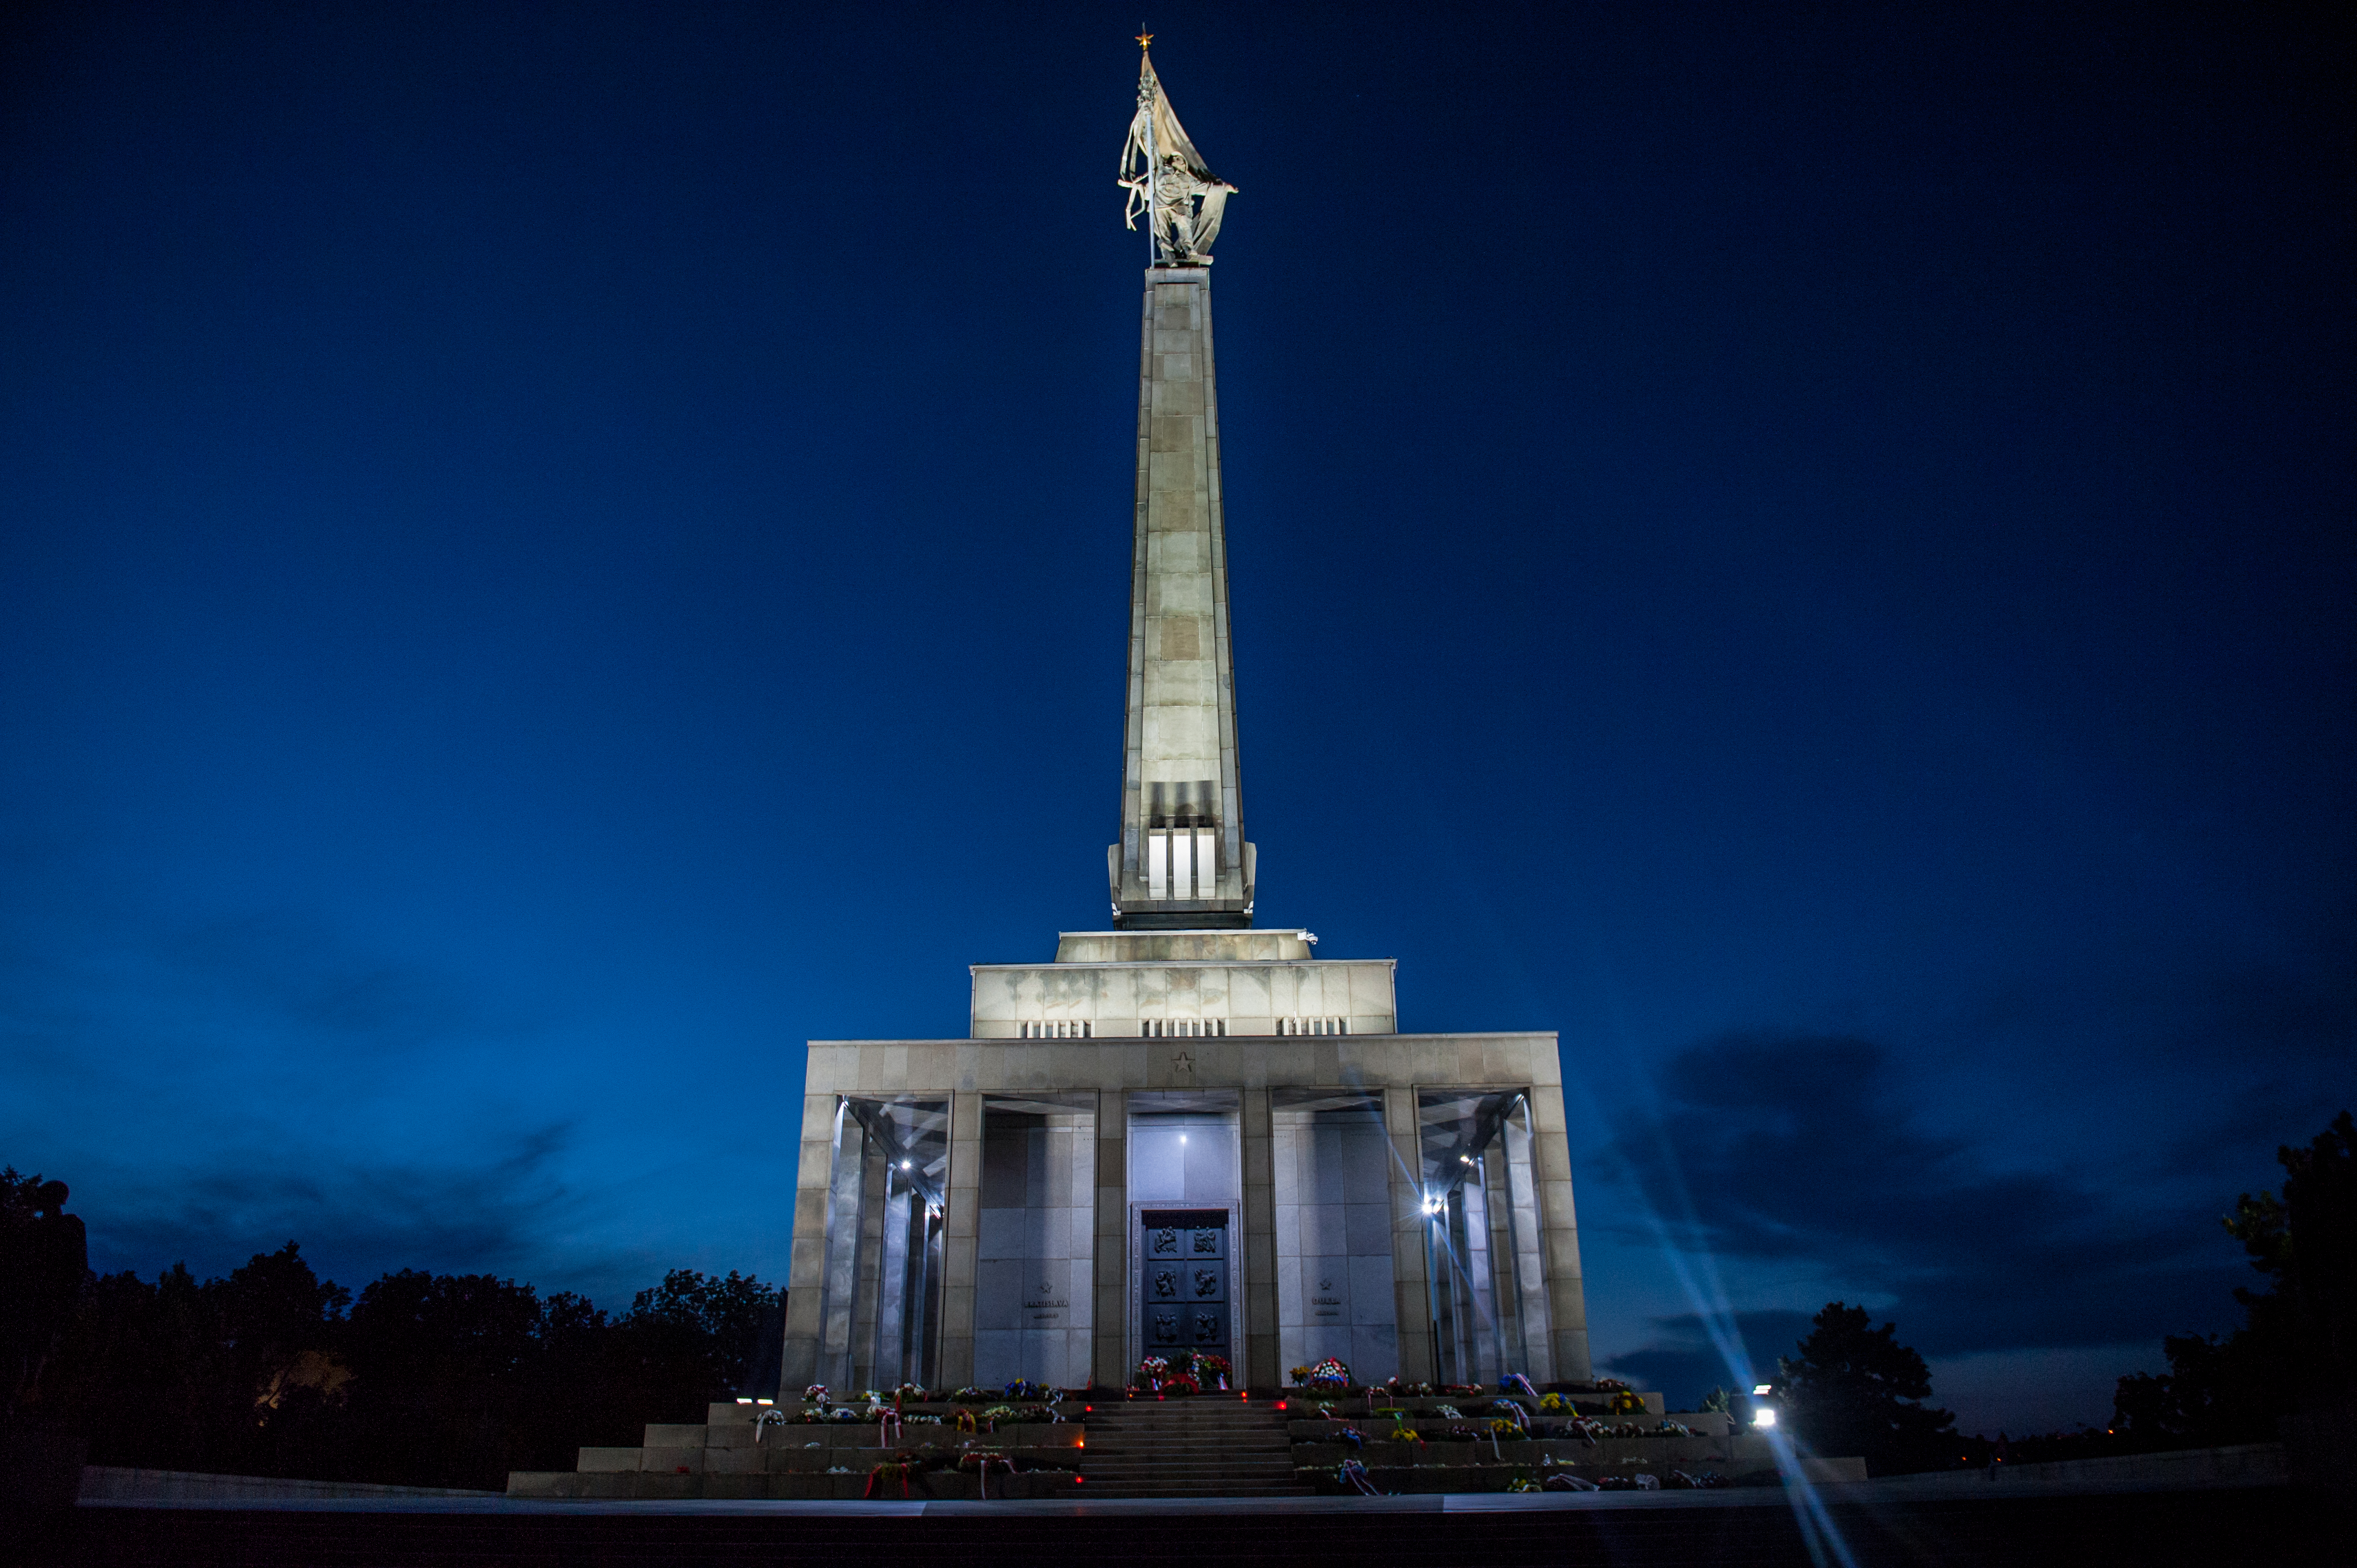 Jeden zo symbolov Bratislavy - vojnový pamätník Slavín.